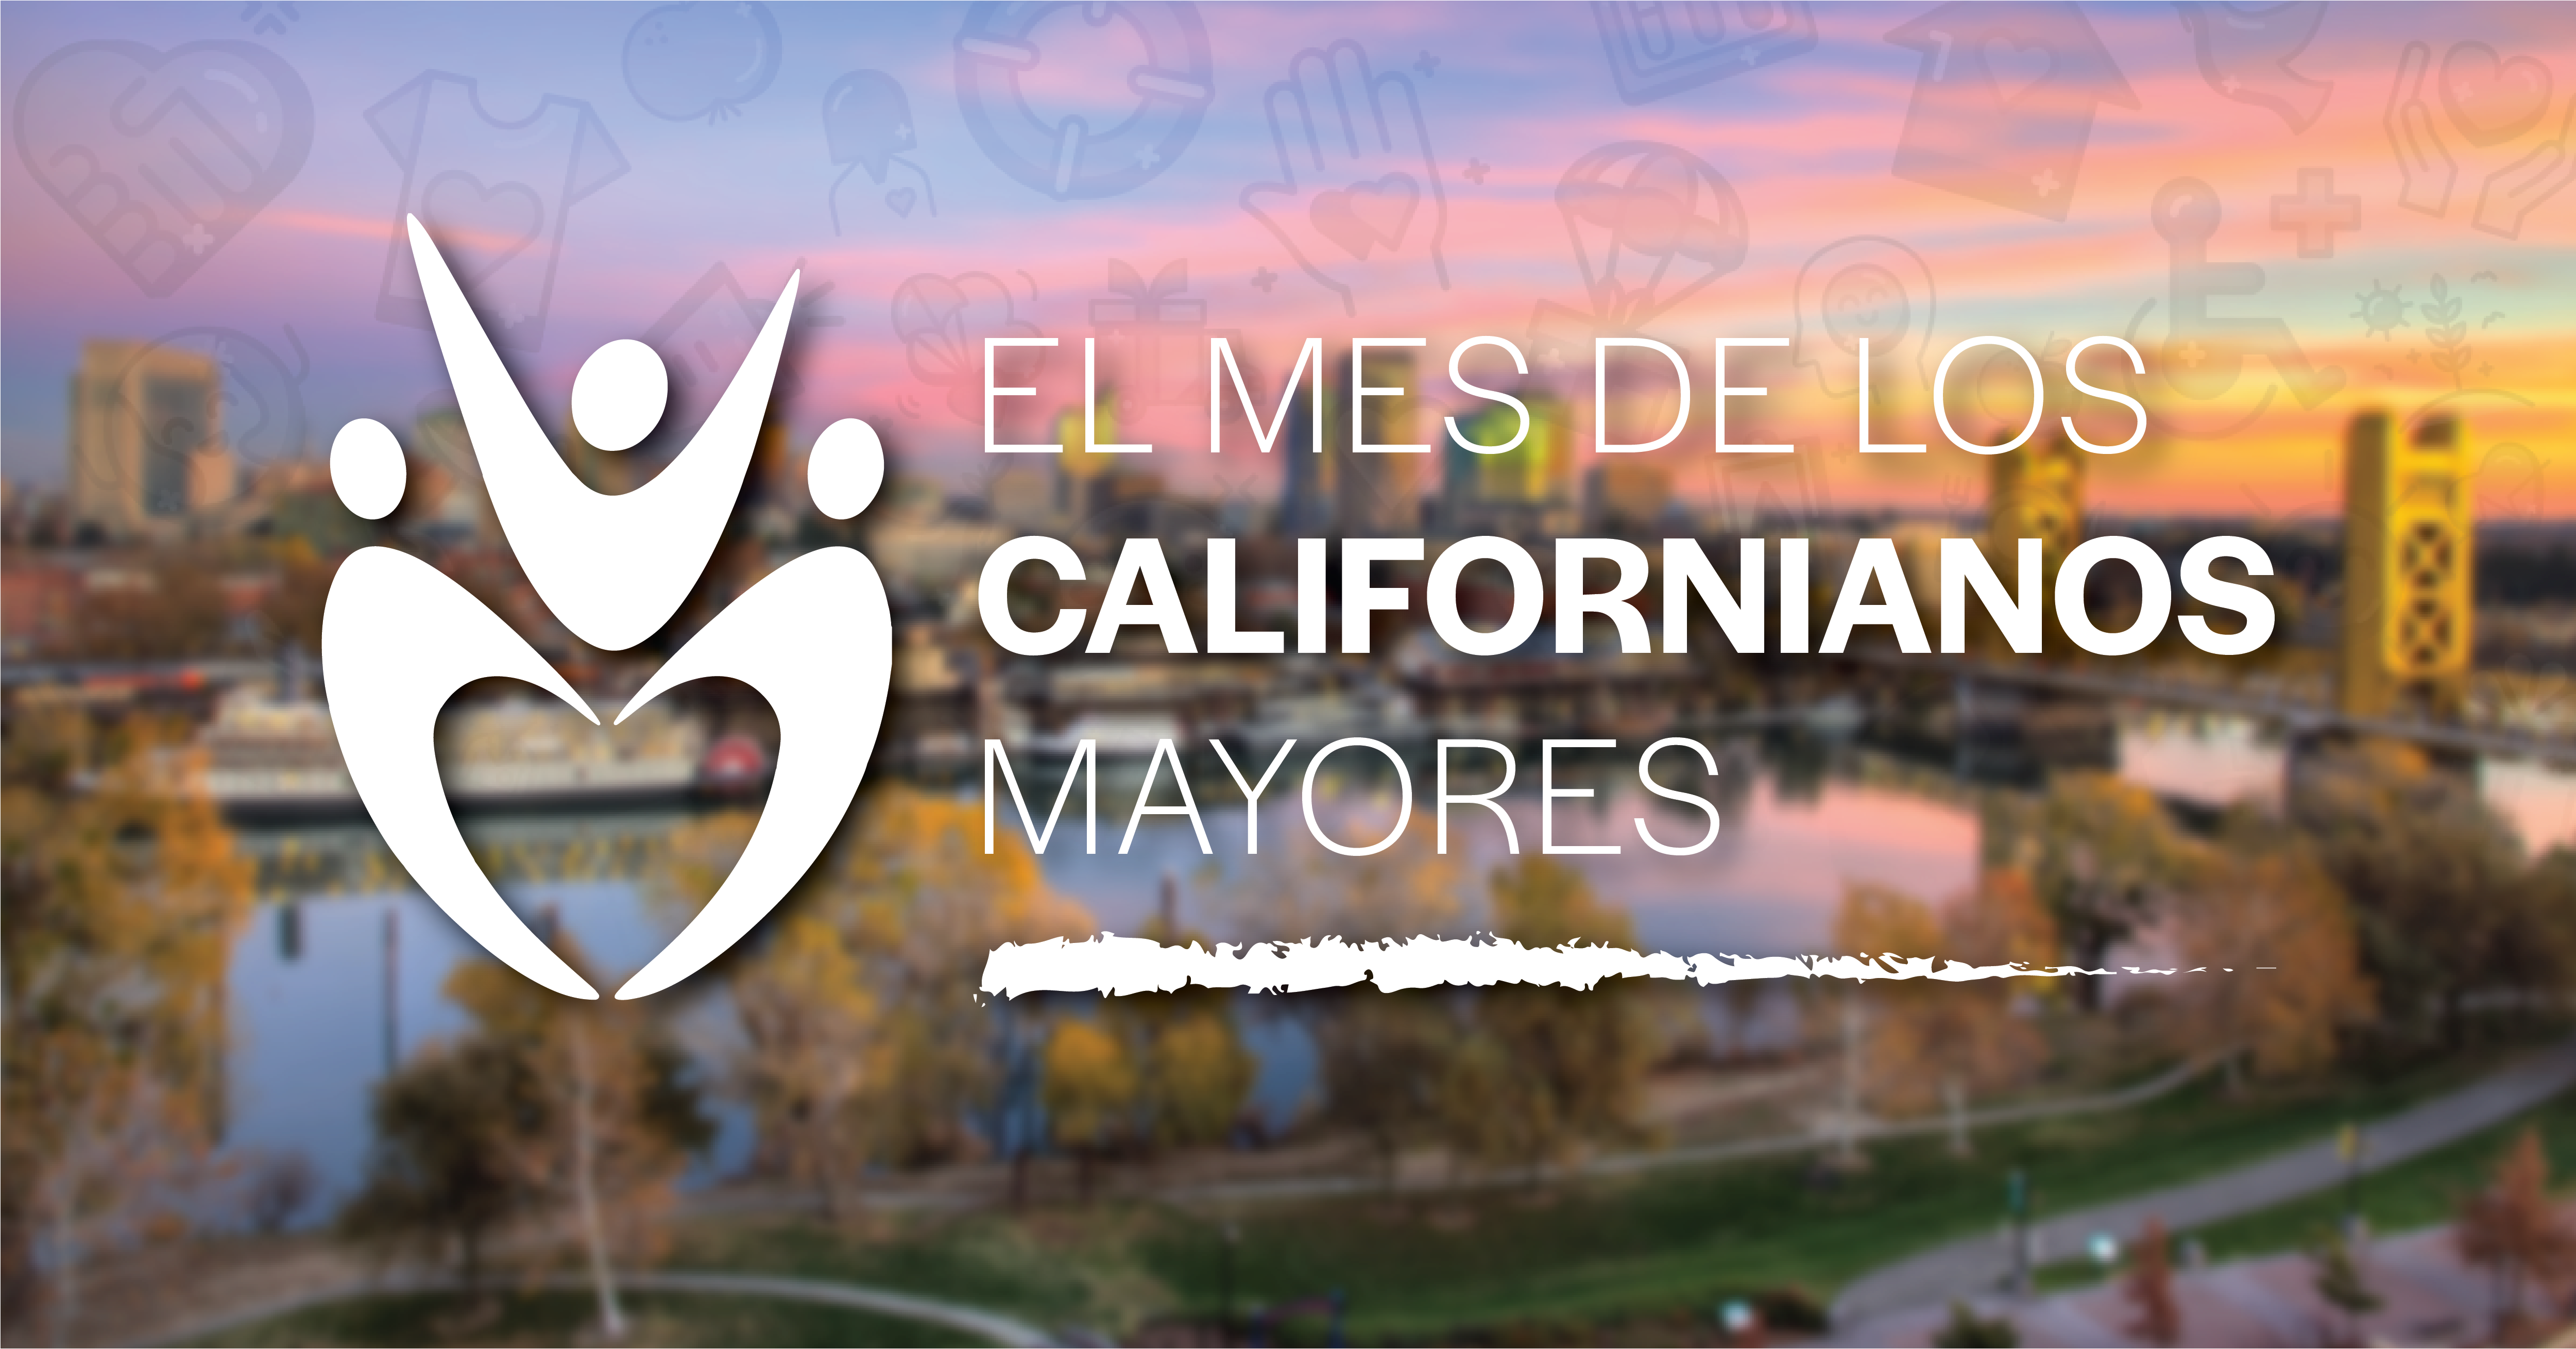 Logotipo del mes de californianos mayores. imagen de la ciudad